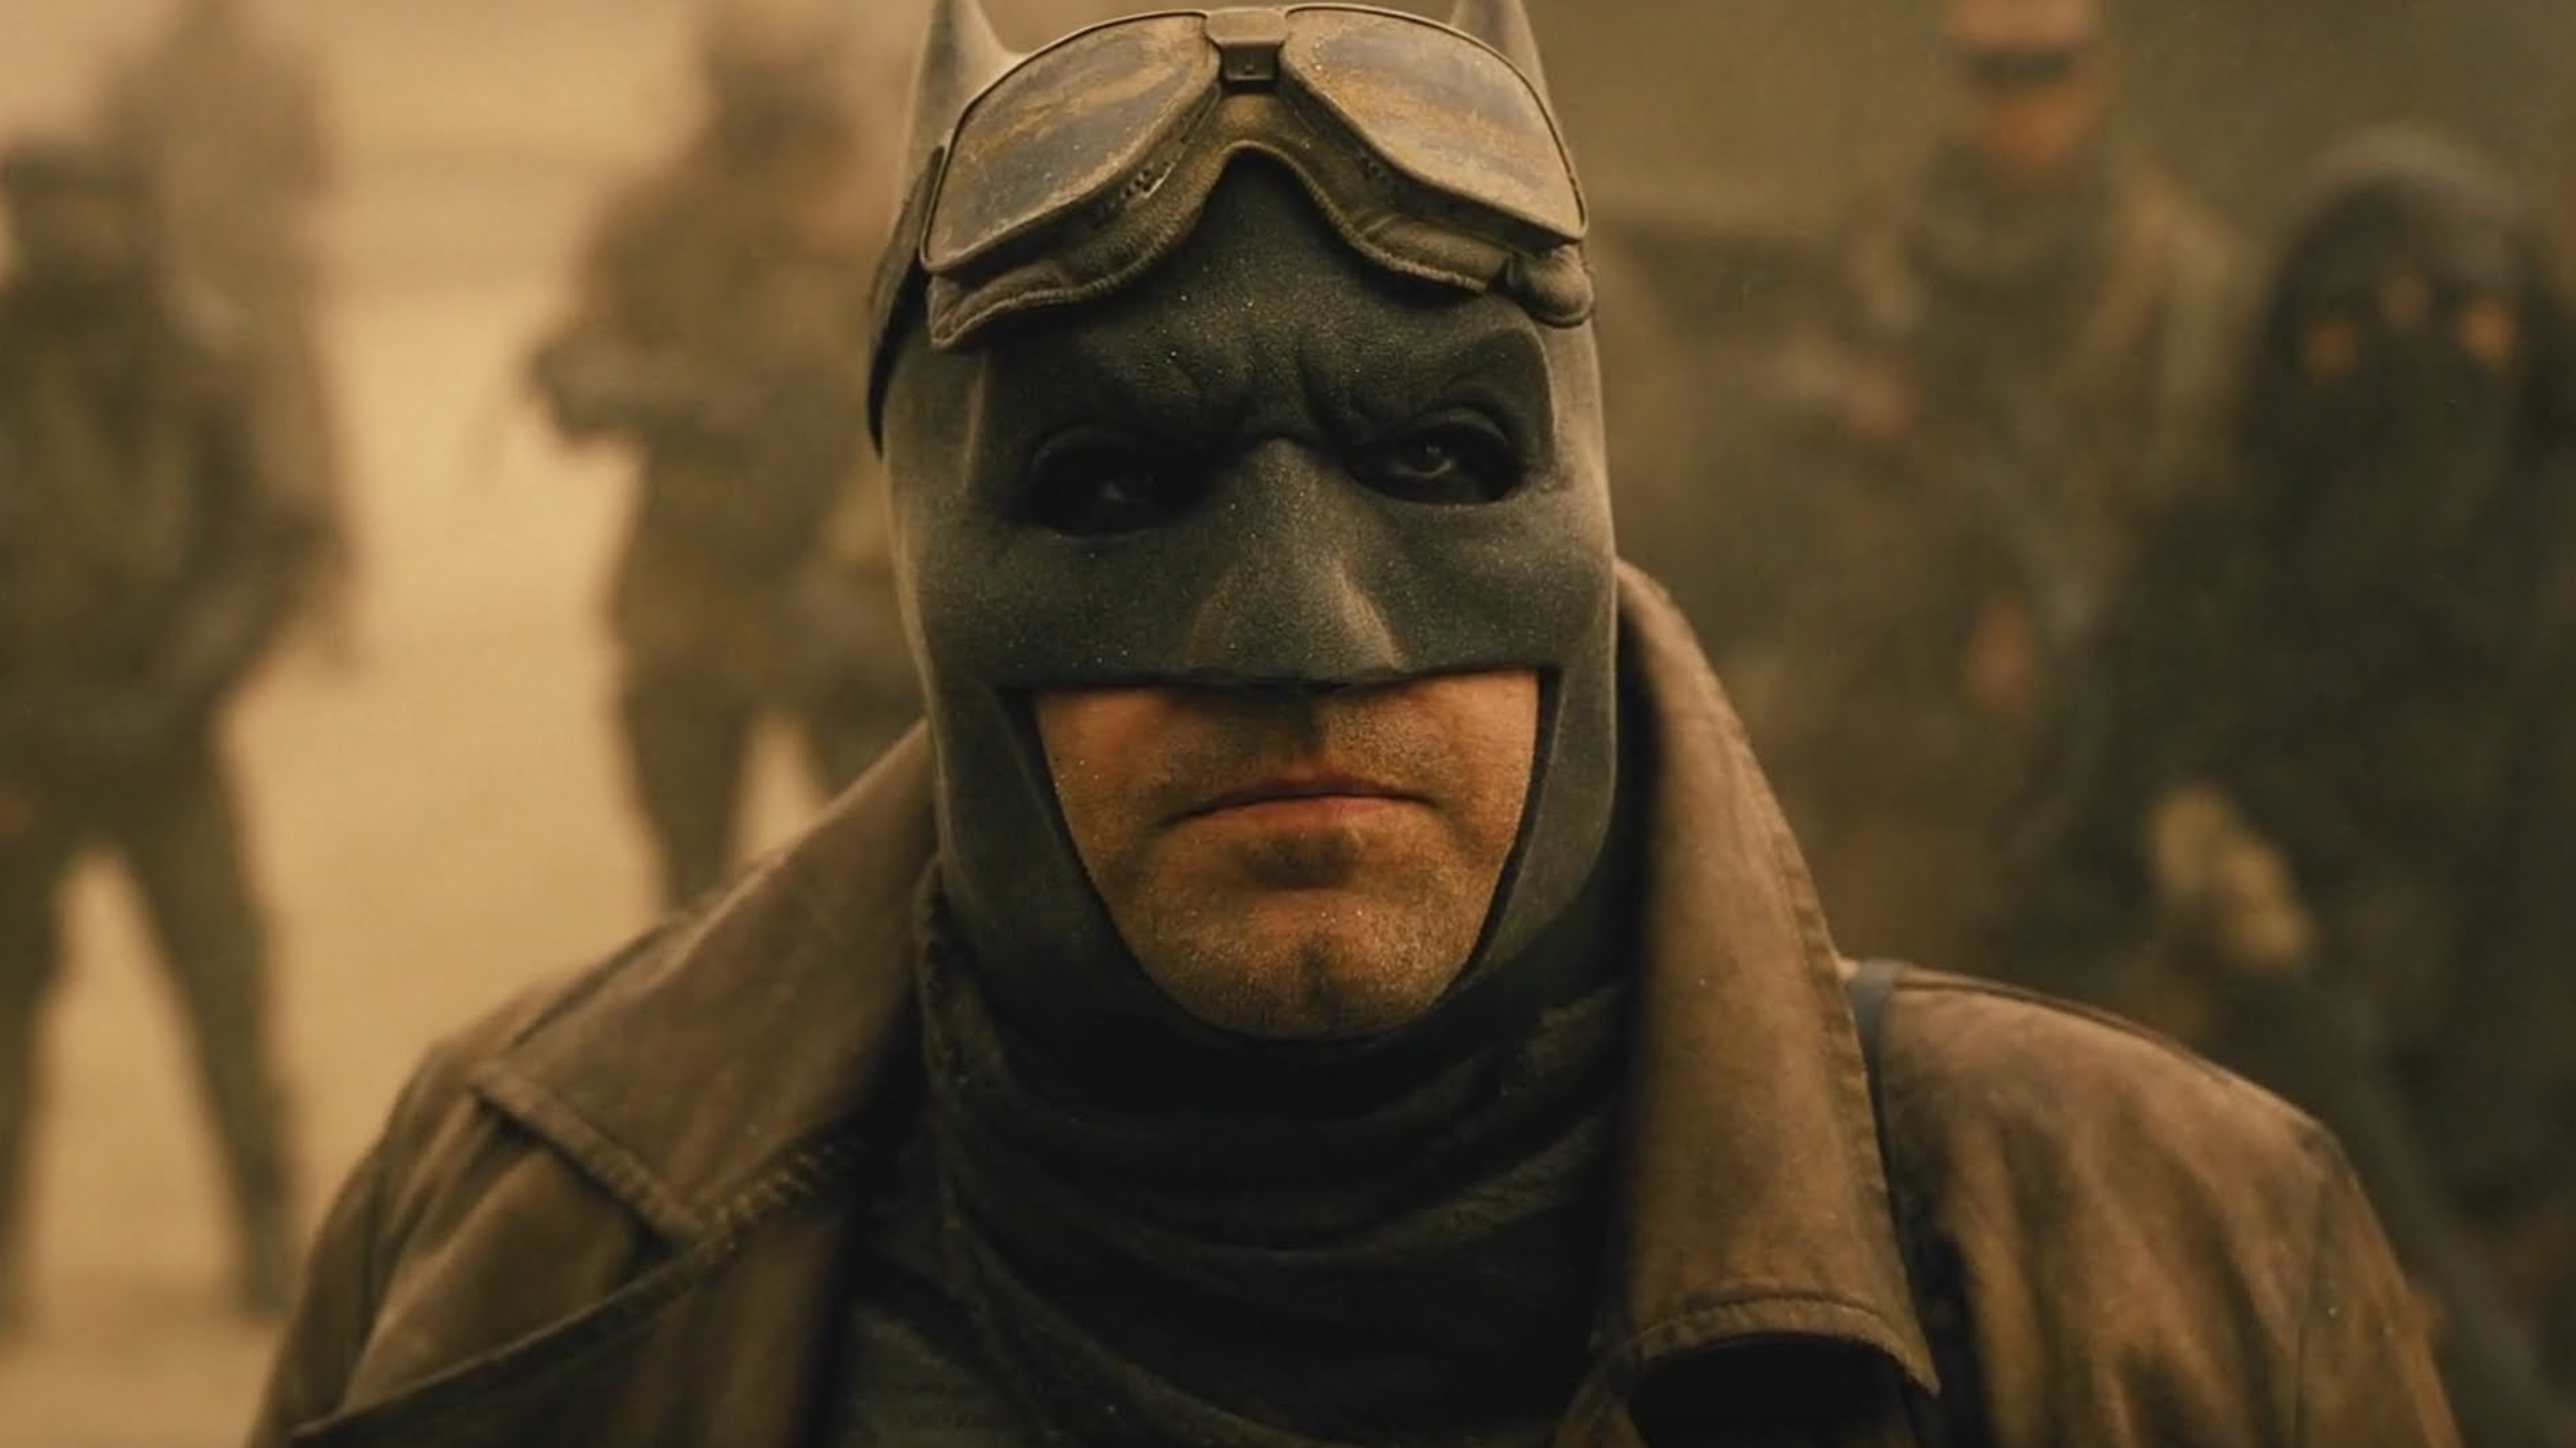 Justice League : Zack Snyder livre une nouvelle image intrigante de Batman